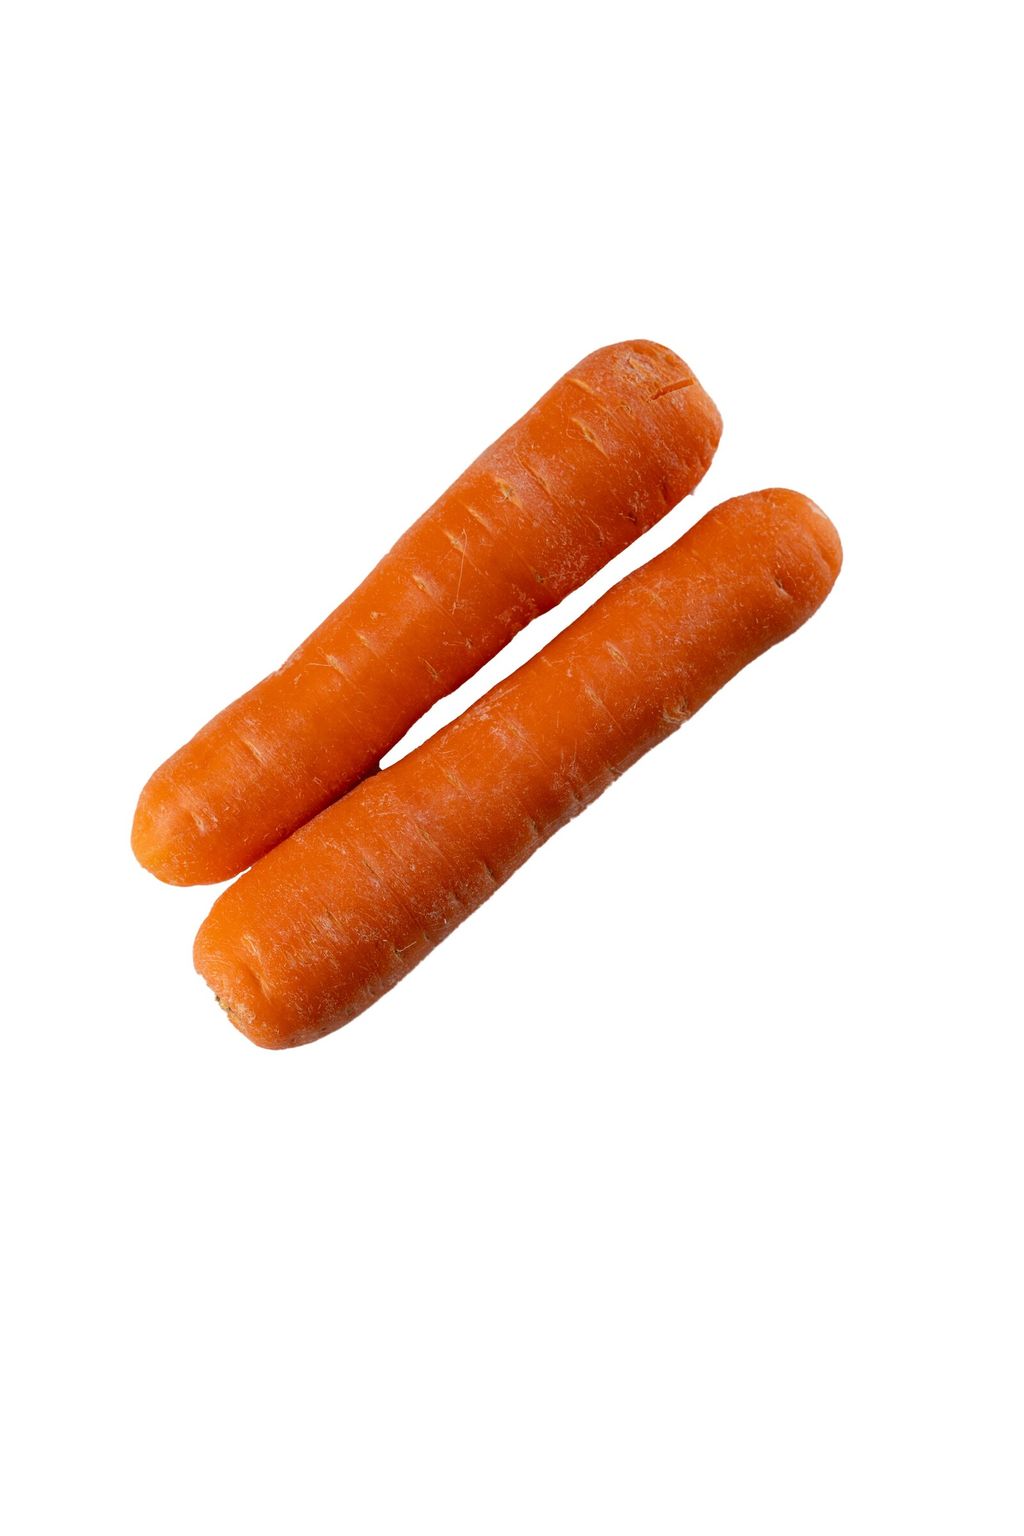 Carrot 2 (White).jpg